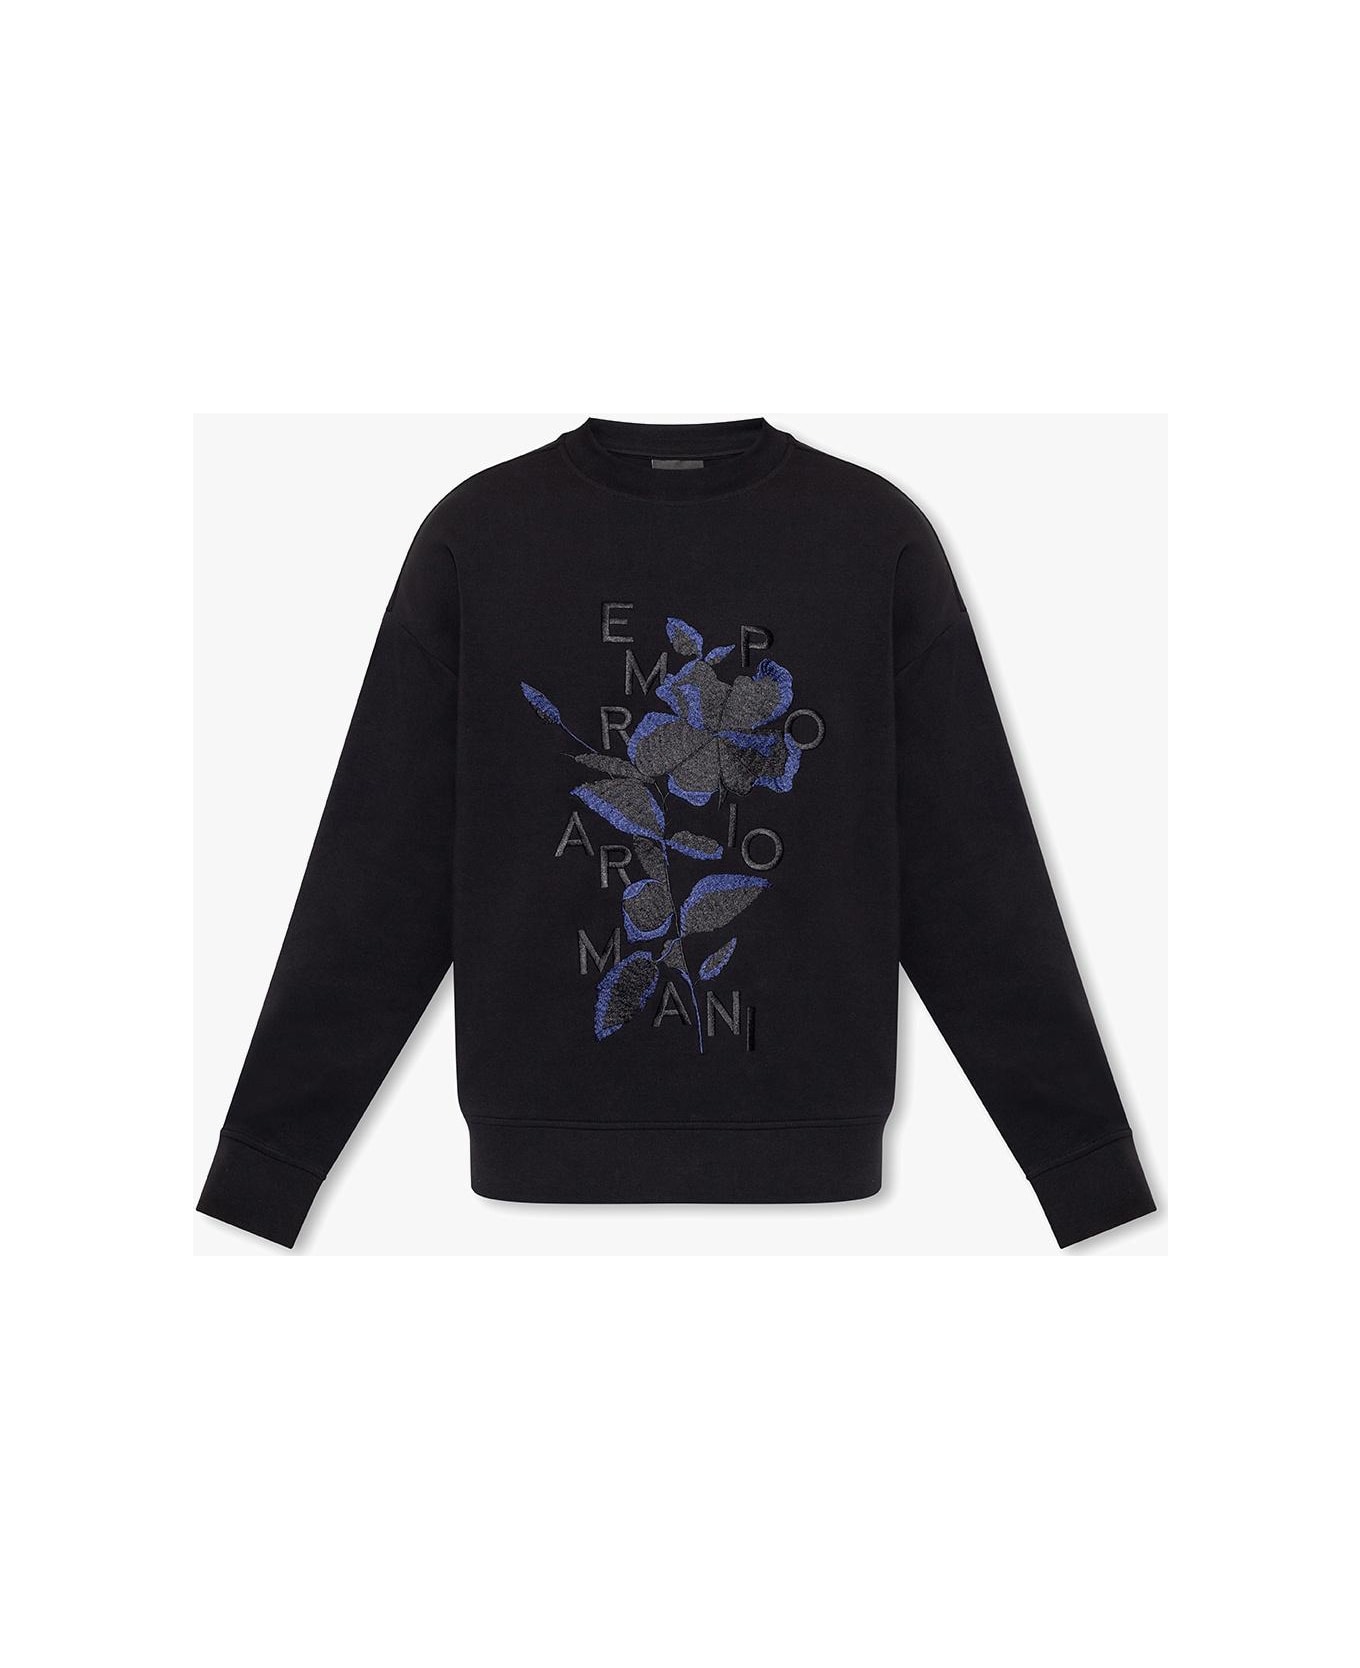 Emporio Armani Baltimore Sweatshirt With Floral Motif - Nero